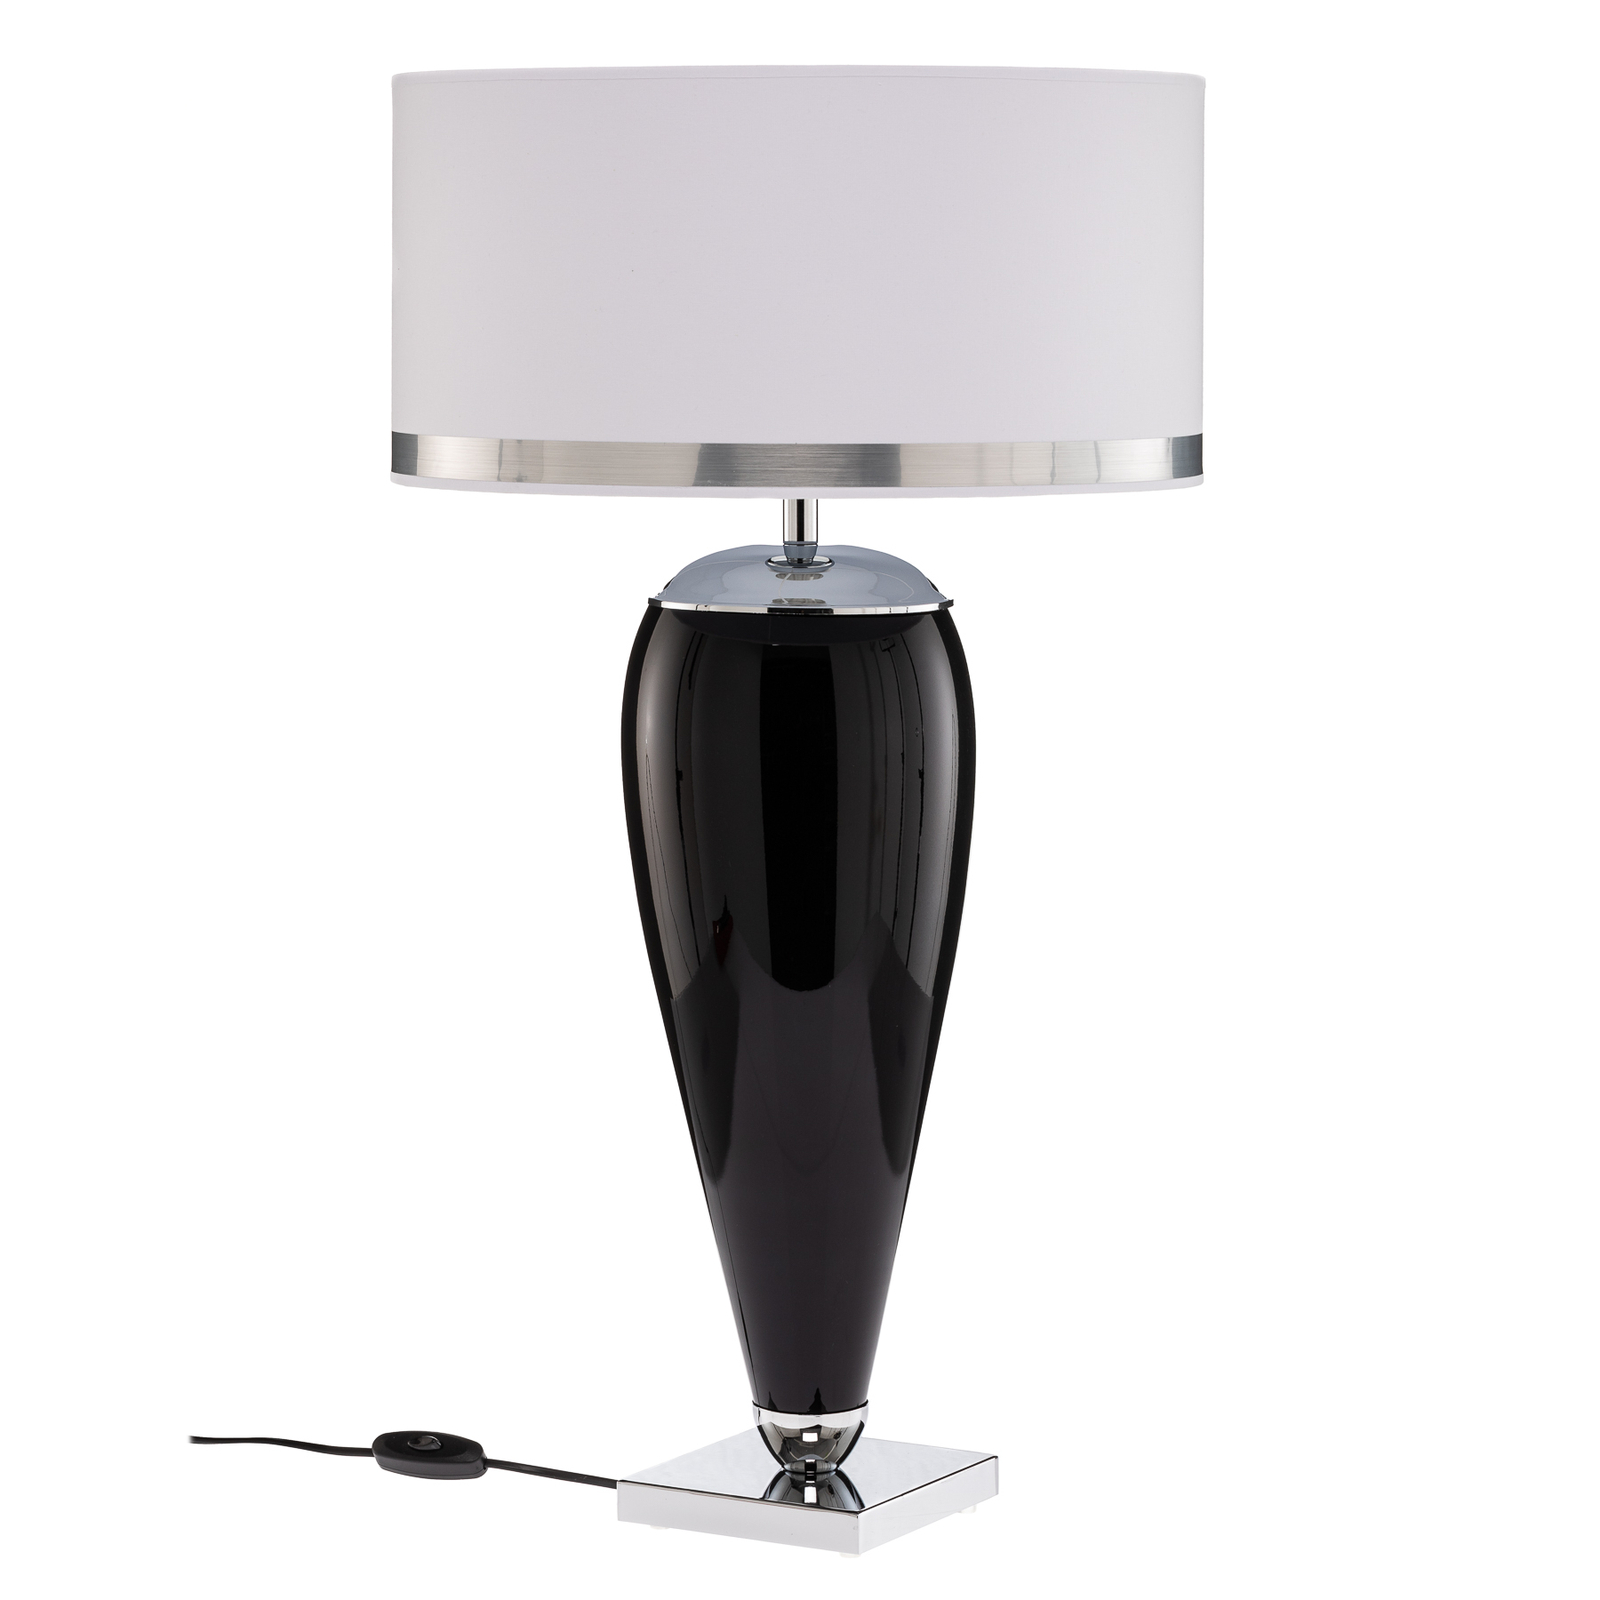 Bordlampe Lund i hvit og svart, høyde 70 cm